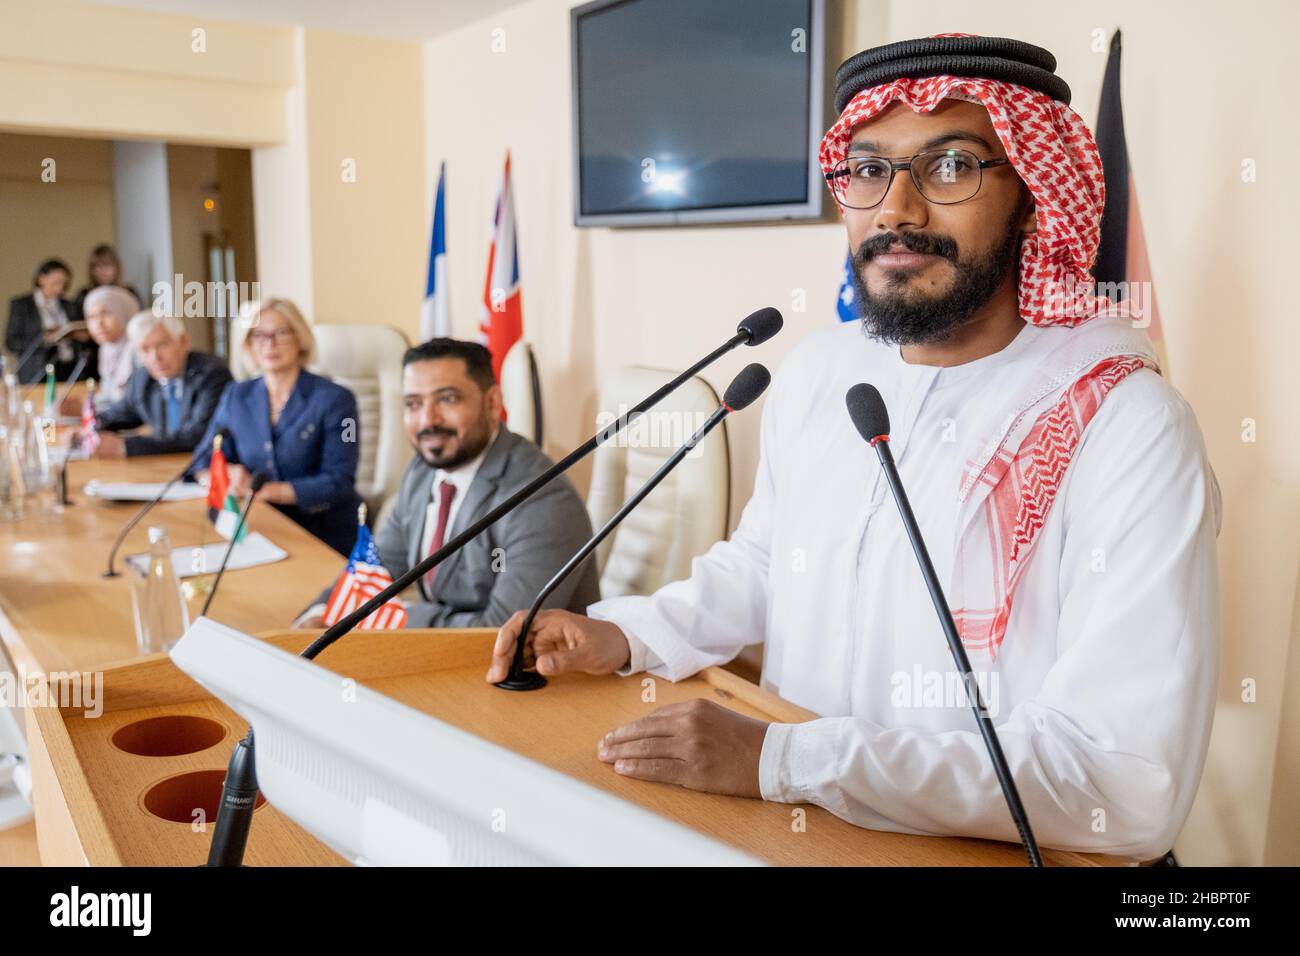 Jeune haut-parleur arabe regardant la caméra en se tenant debout près d'une tribune avec microphone sur fond de délégués étrangers Banque D'Images